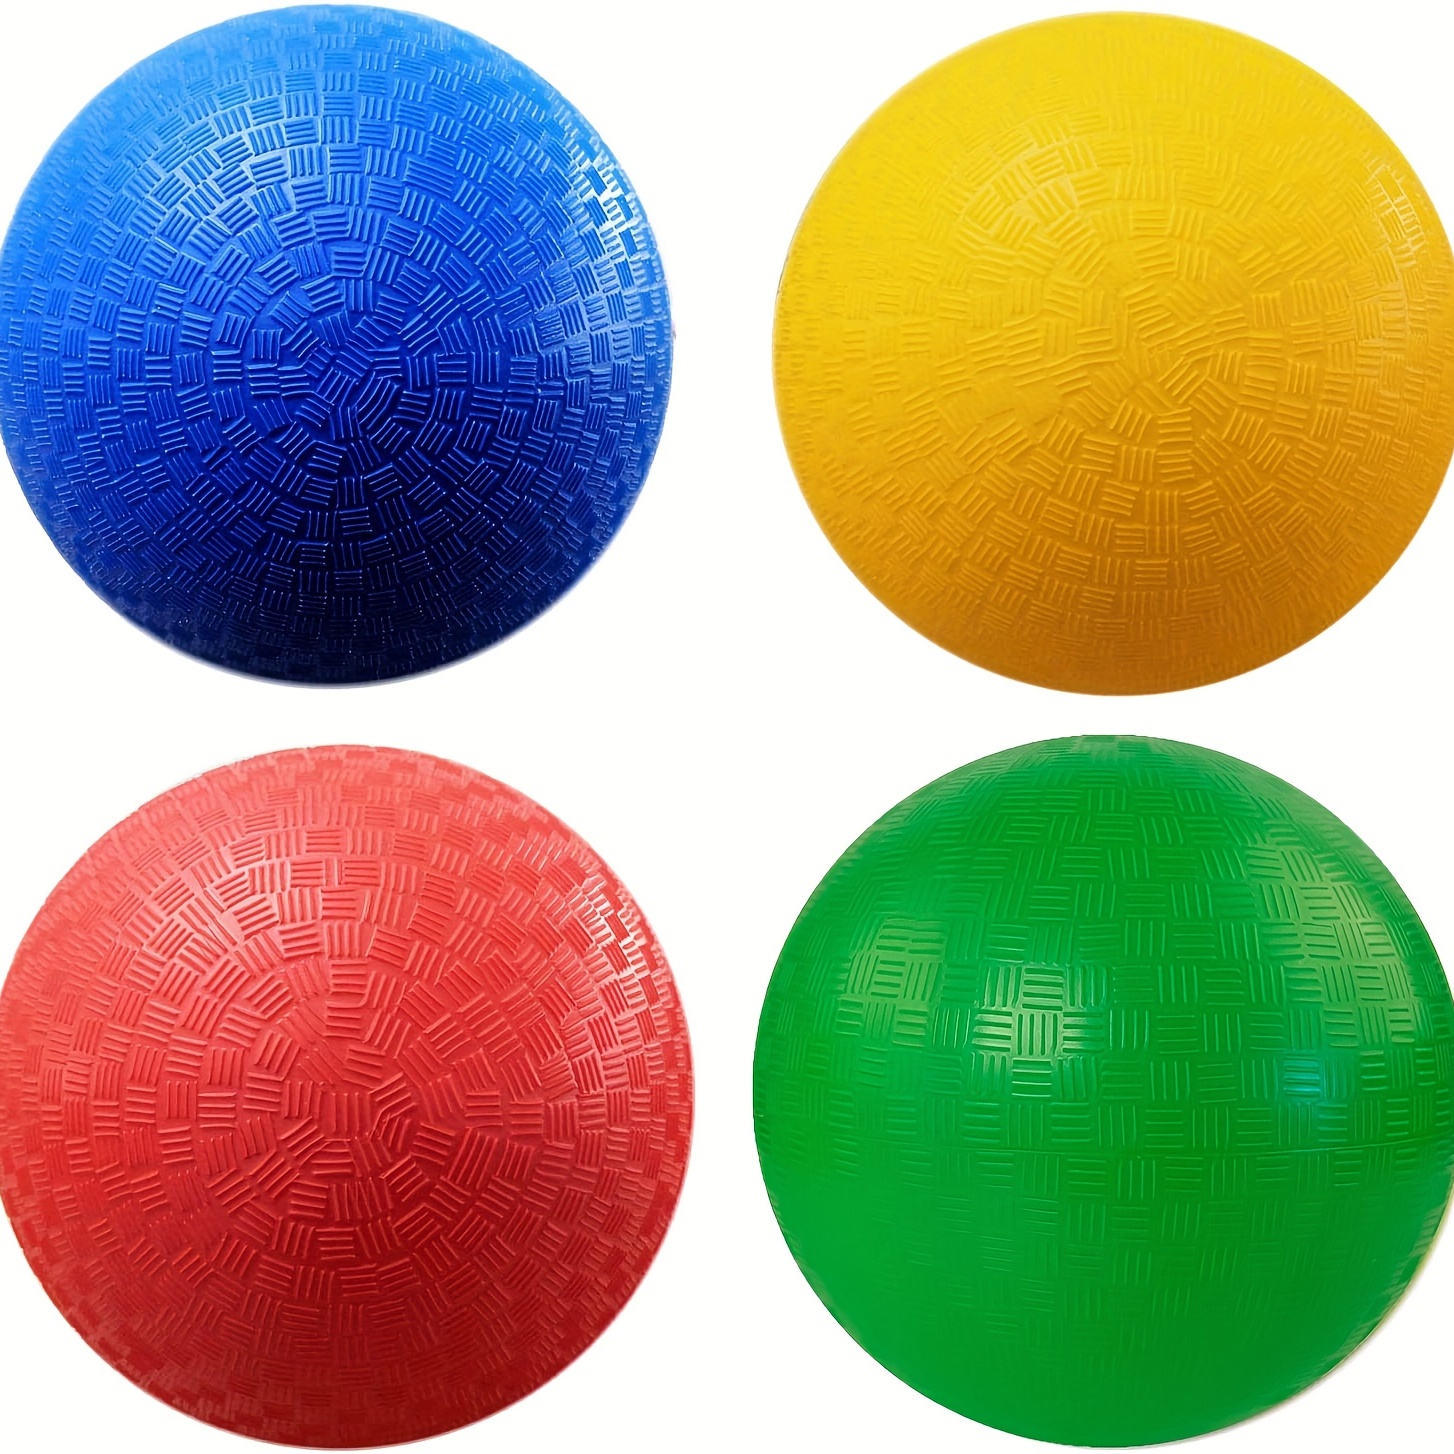 Le Handleshh Silent Basketball - Matériau haut de gamme, balle en mousse  silencieuse, design unique, entraînement et aide au jeu